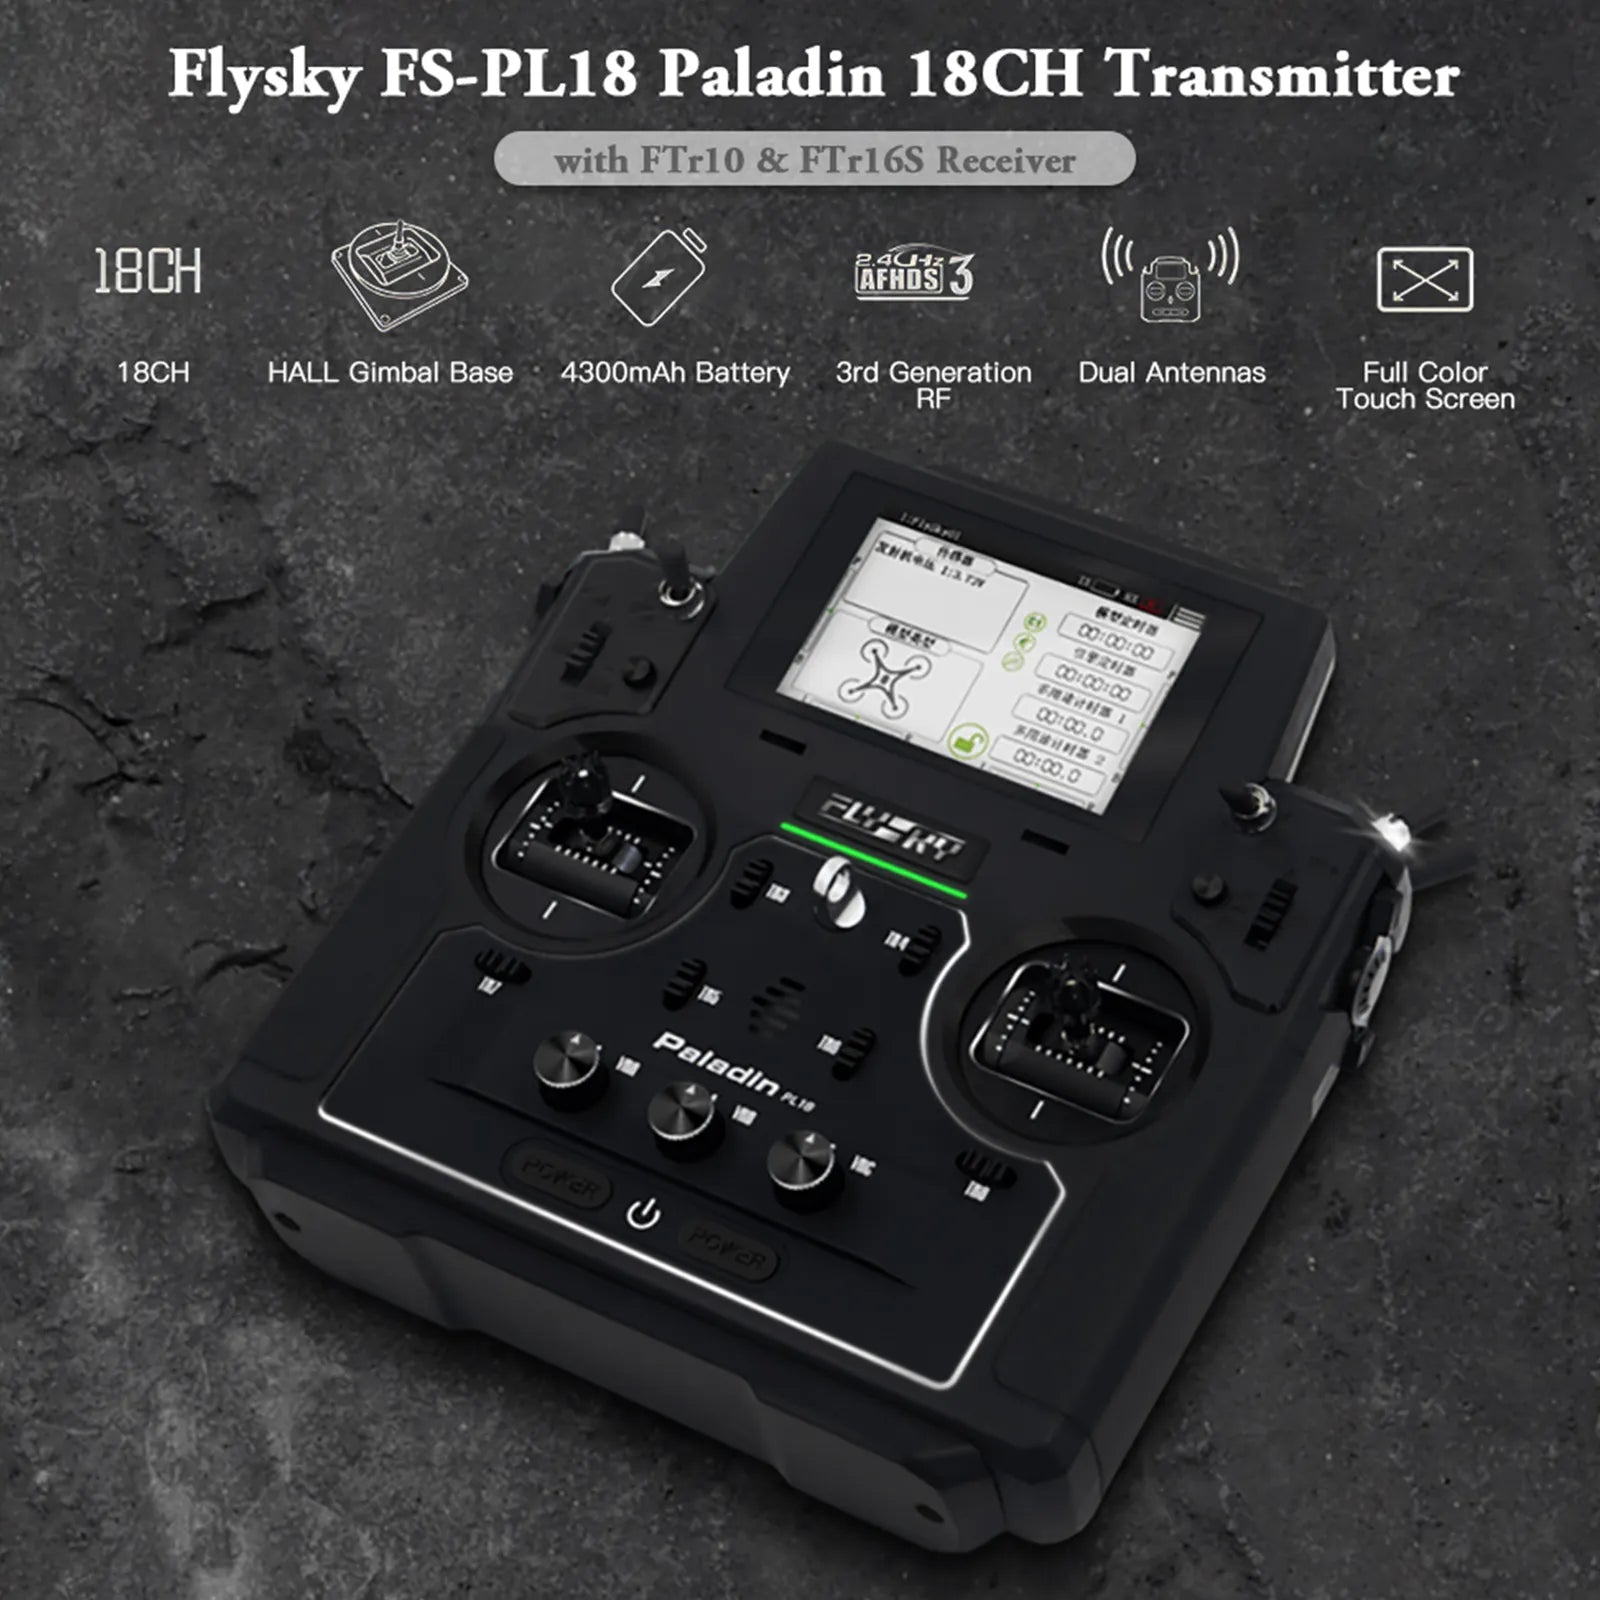 Flysky FS-PL18 Paladin 18CH Transmitter with FTrl